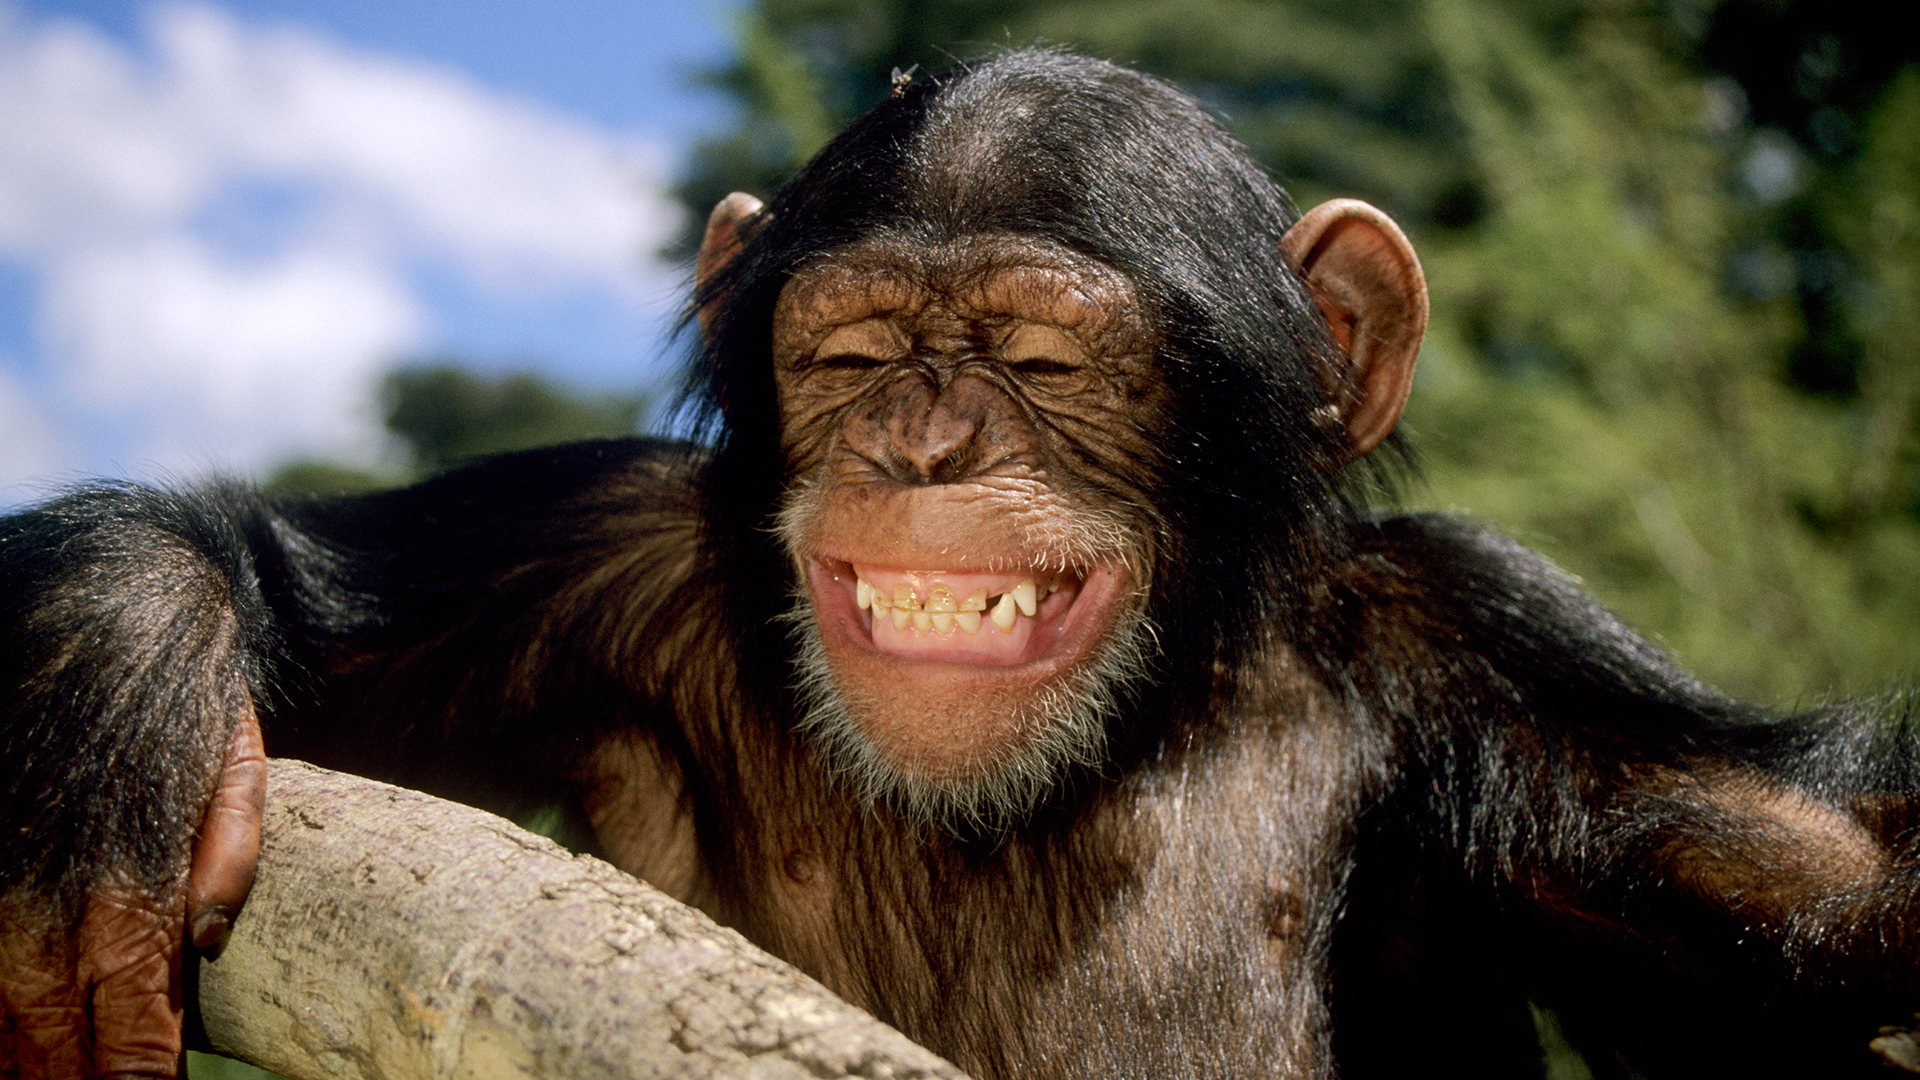 Ein junger Schimpanse - scheinbar lachend.